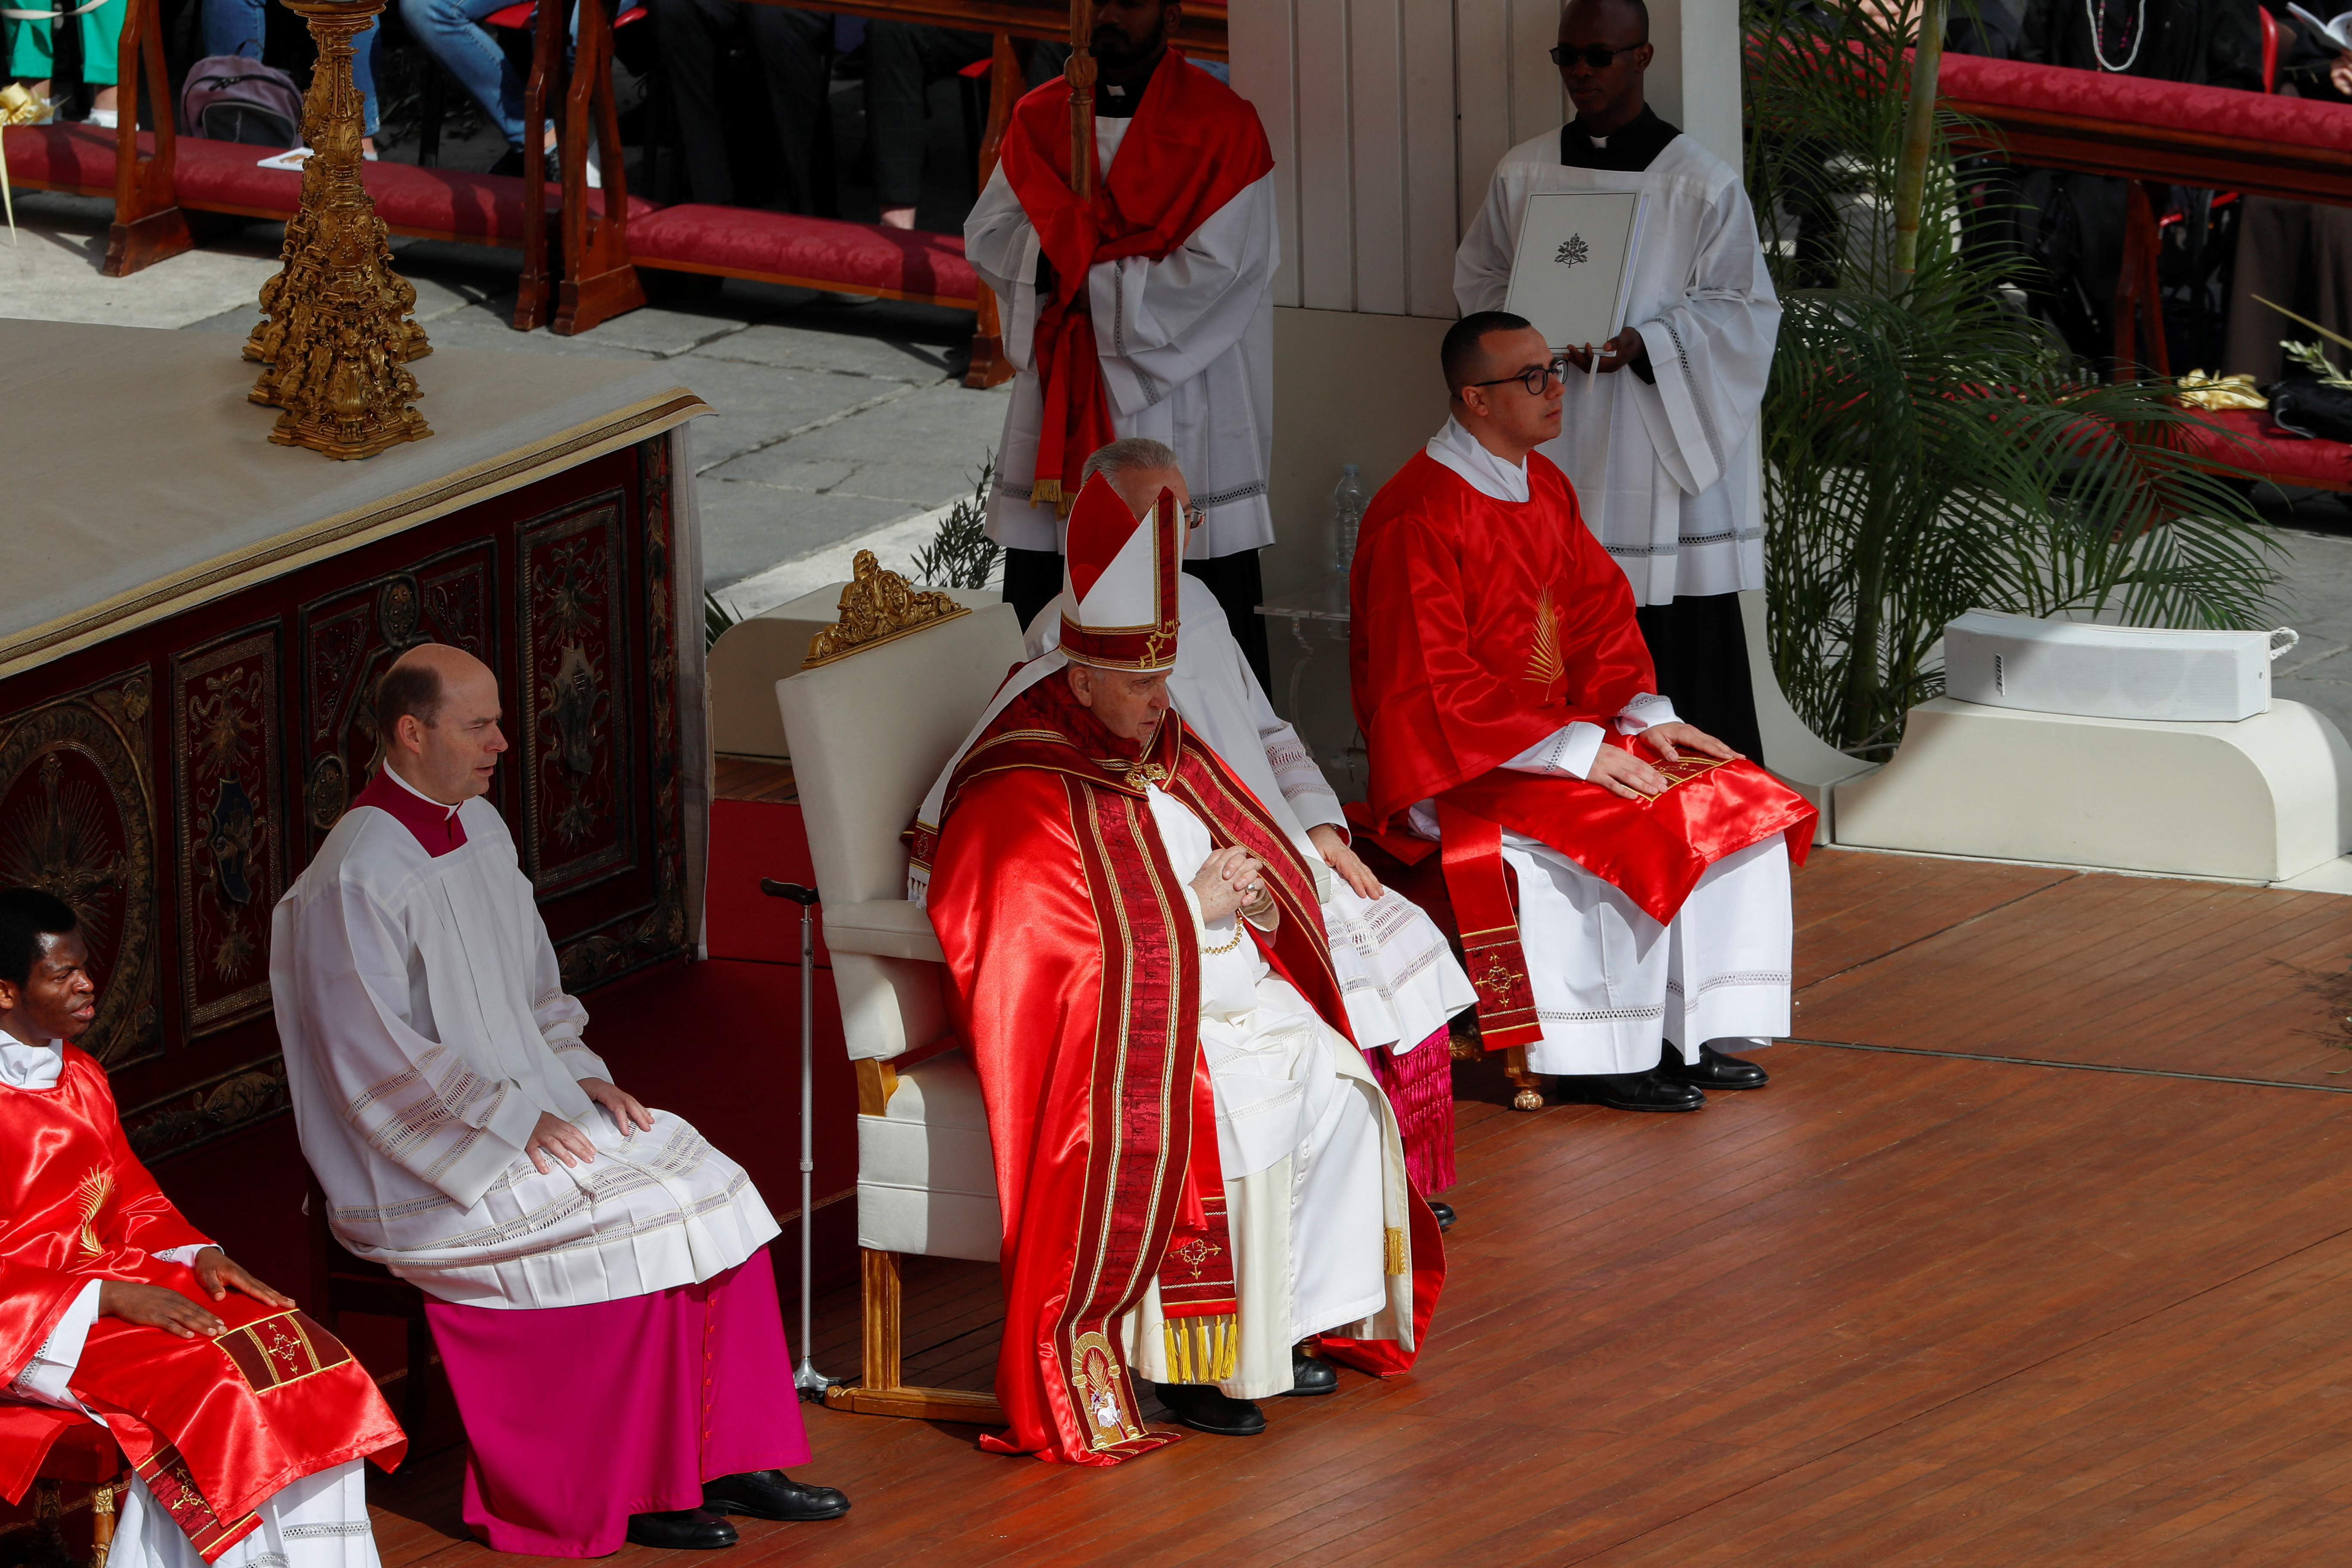 Francisco encabeza la ceremonia sentado en el centro del altar. Leonardo Sandri, vicedecano del colegio cardenalicio, que está por cumplir 80 años, es el reemplazo de Francisco para la eucarística de este domingo. (REUTERS)